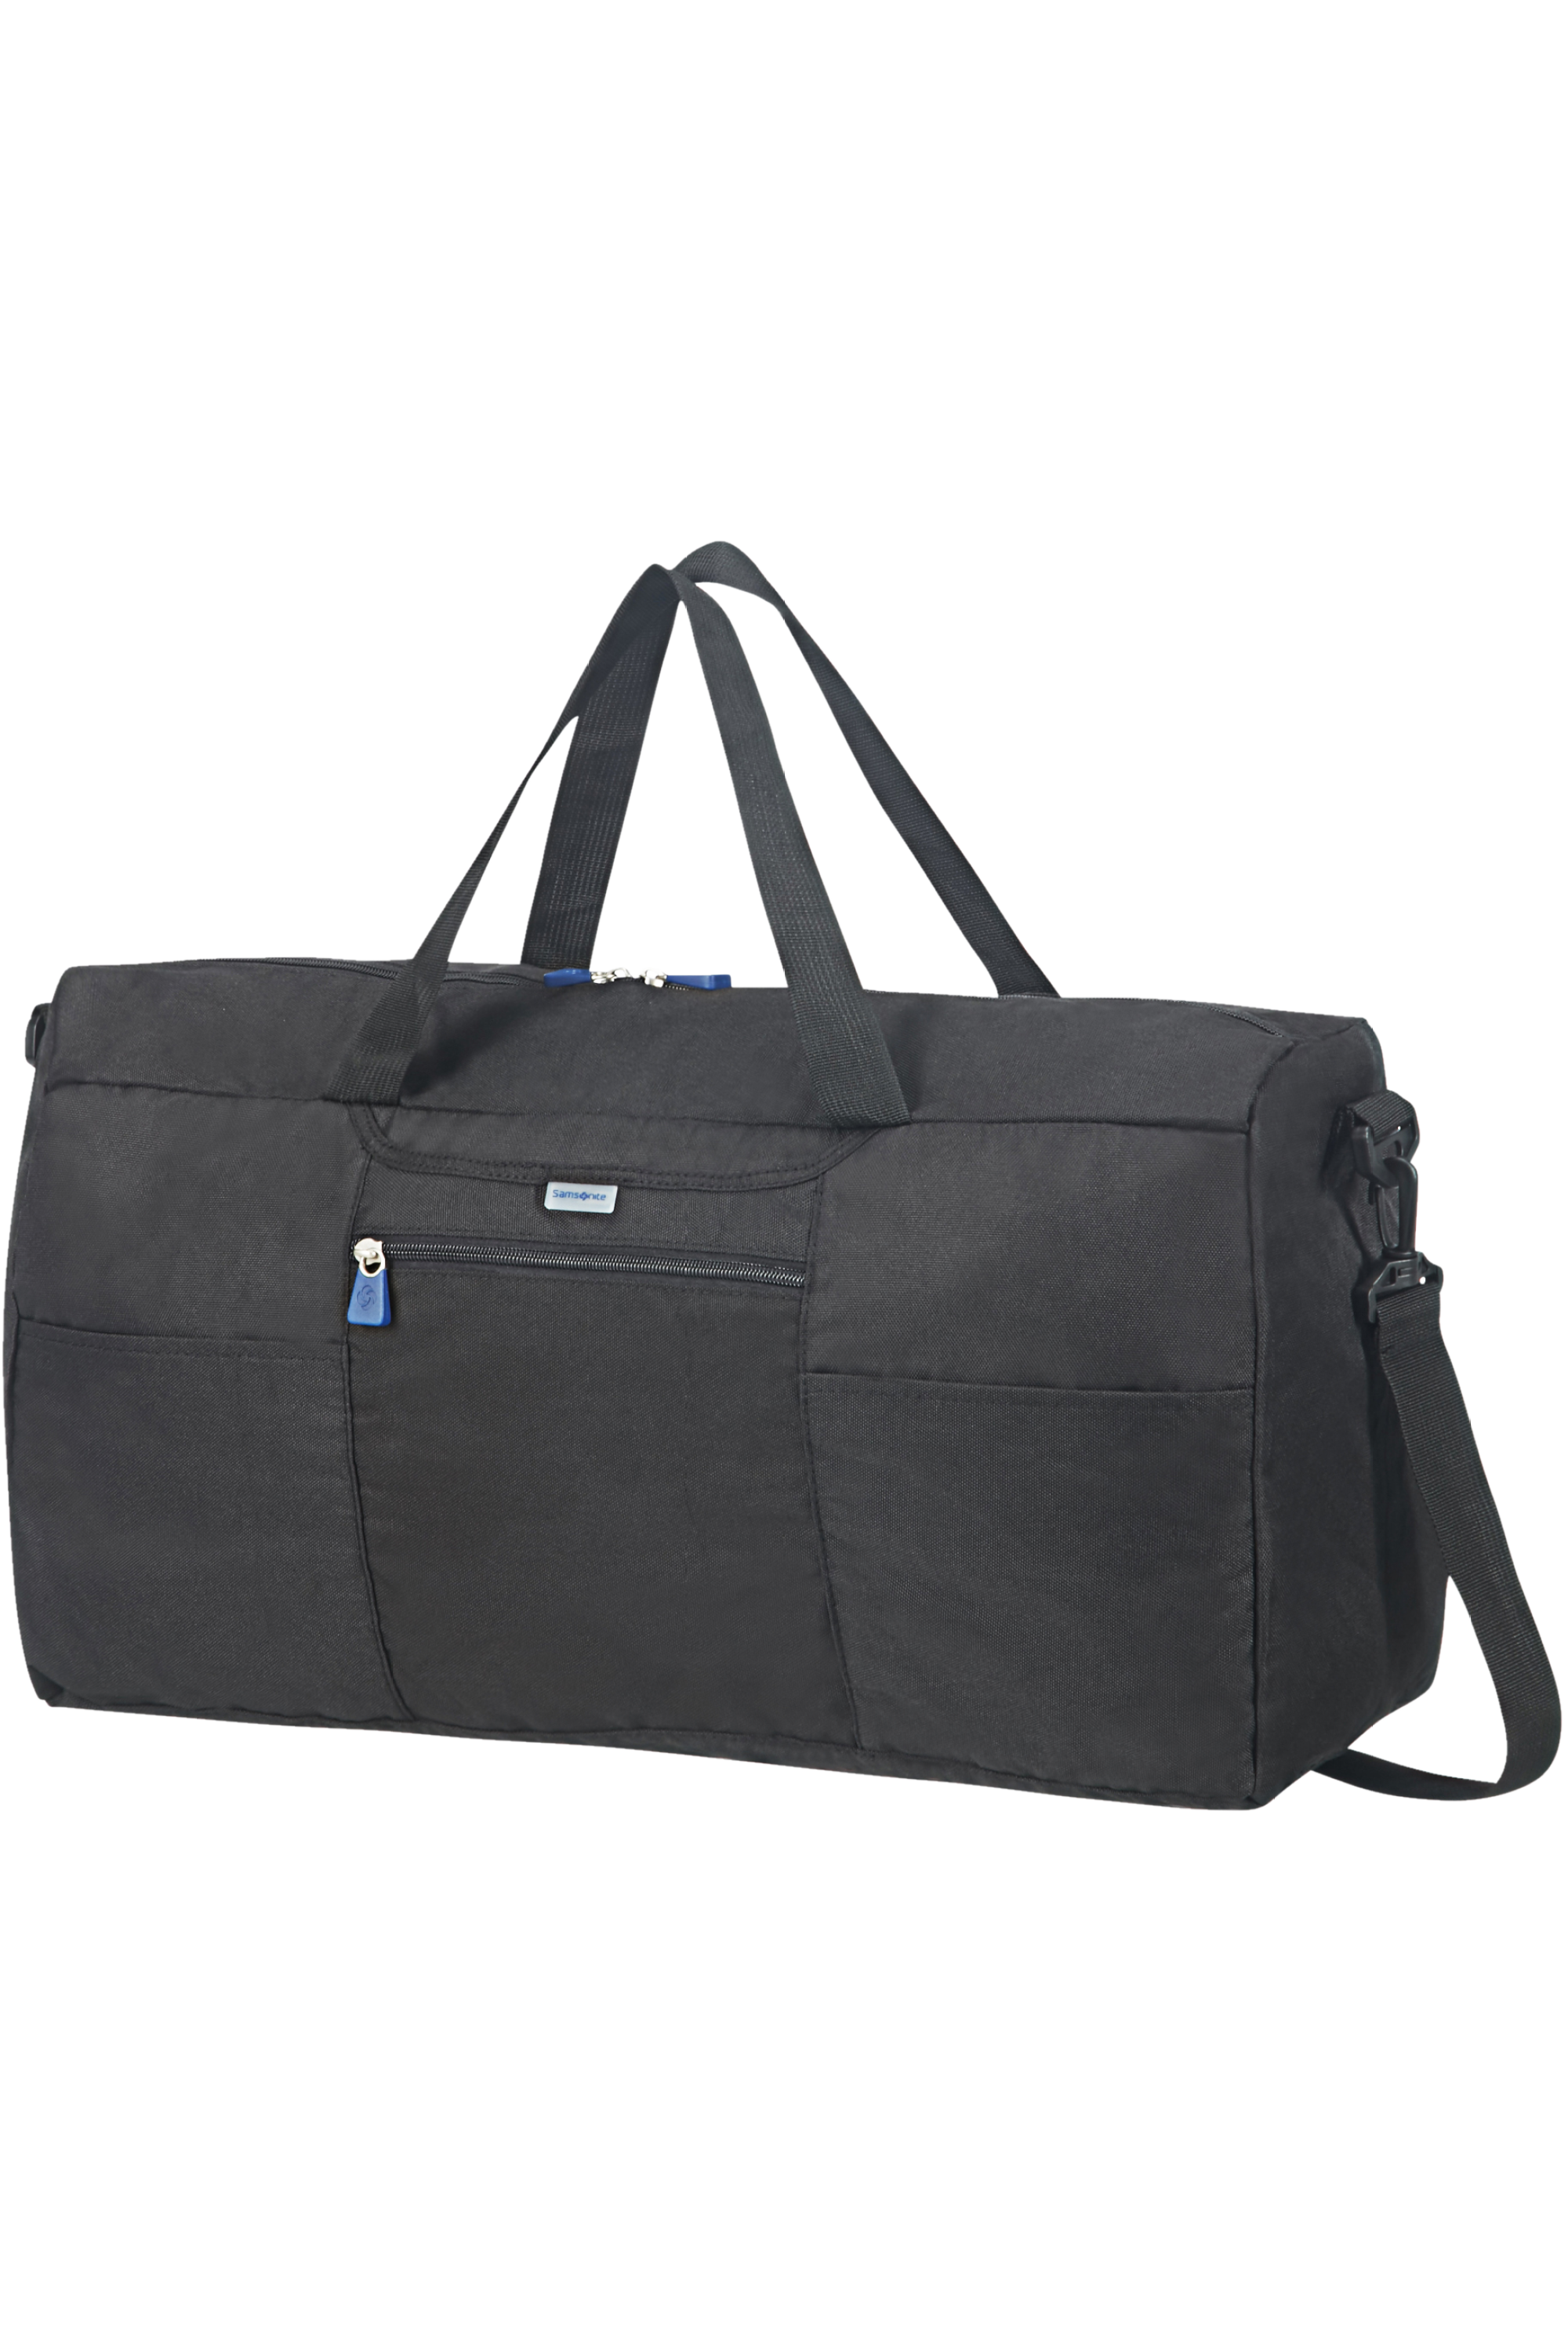 Samsonite Uplite SPL - 45 cm Expandable Duffle Bag by Samsonite Luggage  (Uplite-SPL-45cm-Duffle)